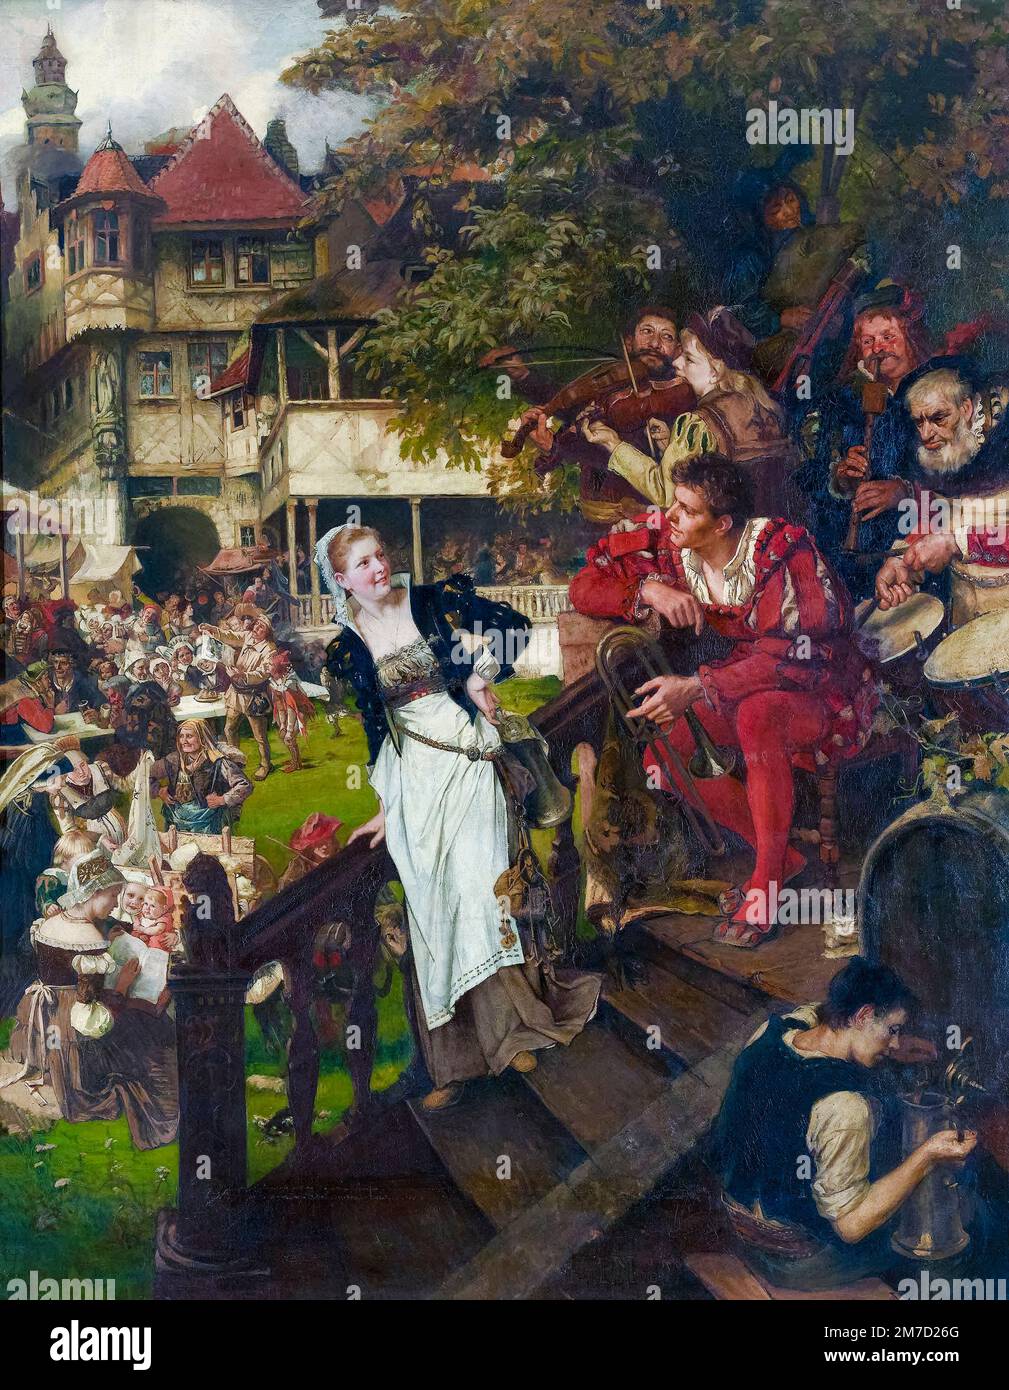 Paula Monjé, alemán, Festival Folclórico, en el siglo 16th, pintura al óleo sobre lienzo, 1883 Foto de stock